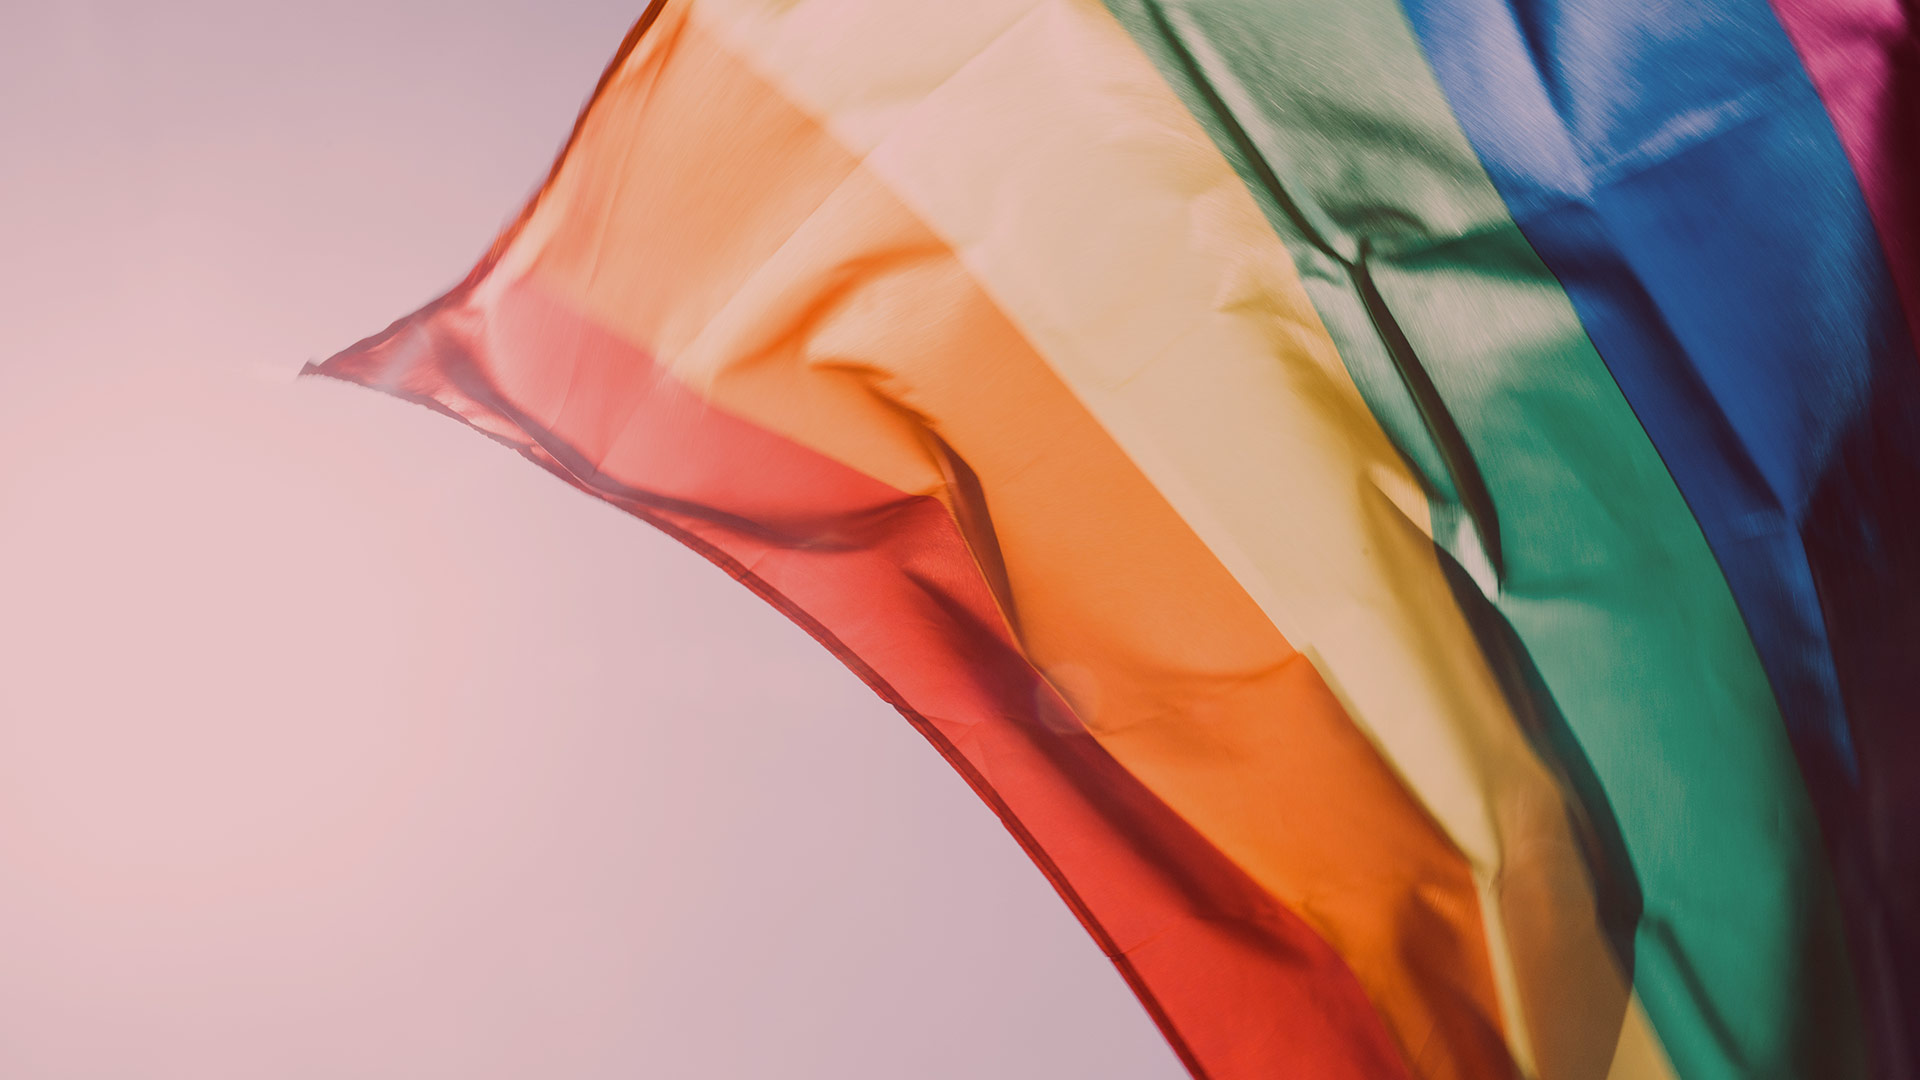 El Orgullo Crítico busca recuperar el espíritu revolucionario de Stonewall